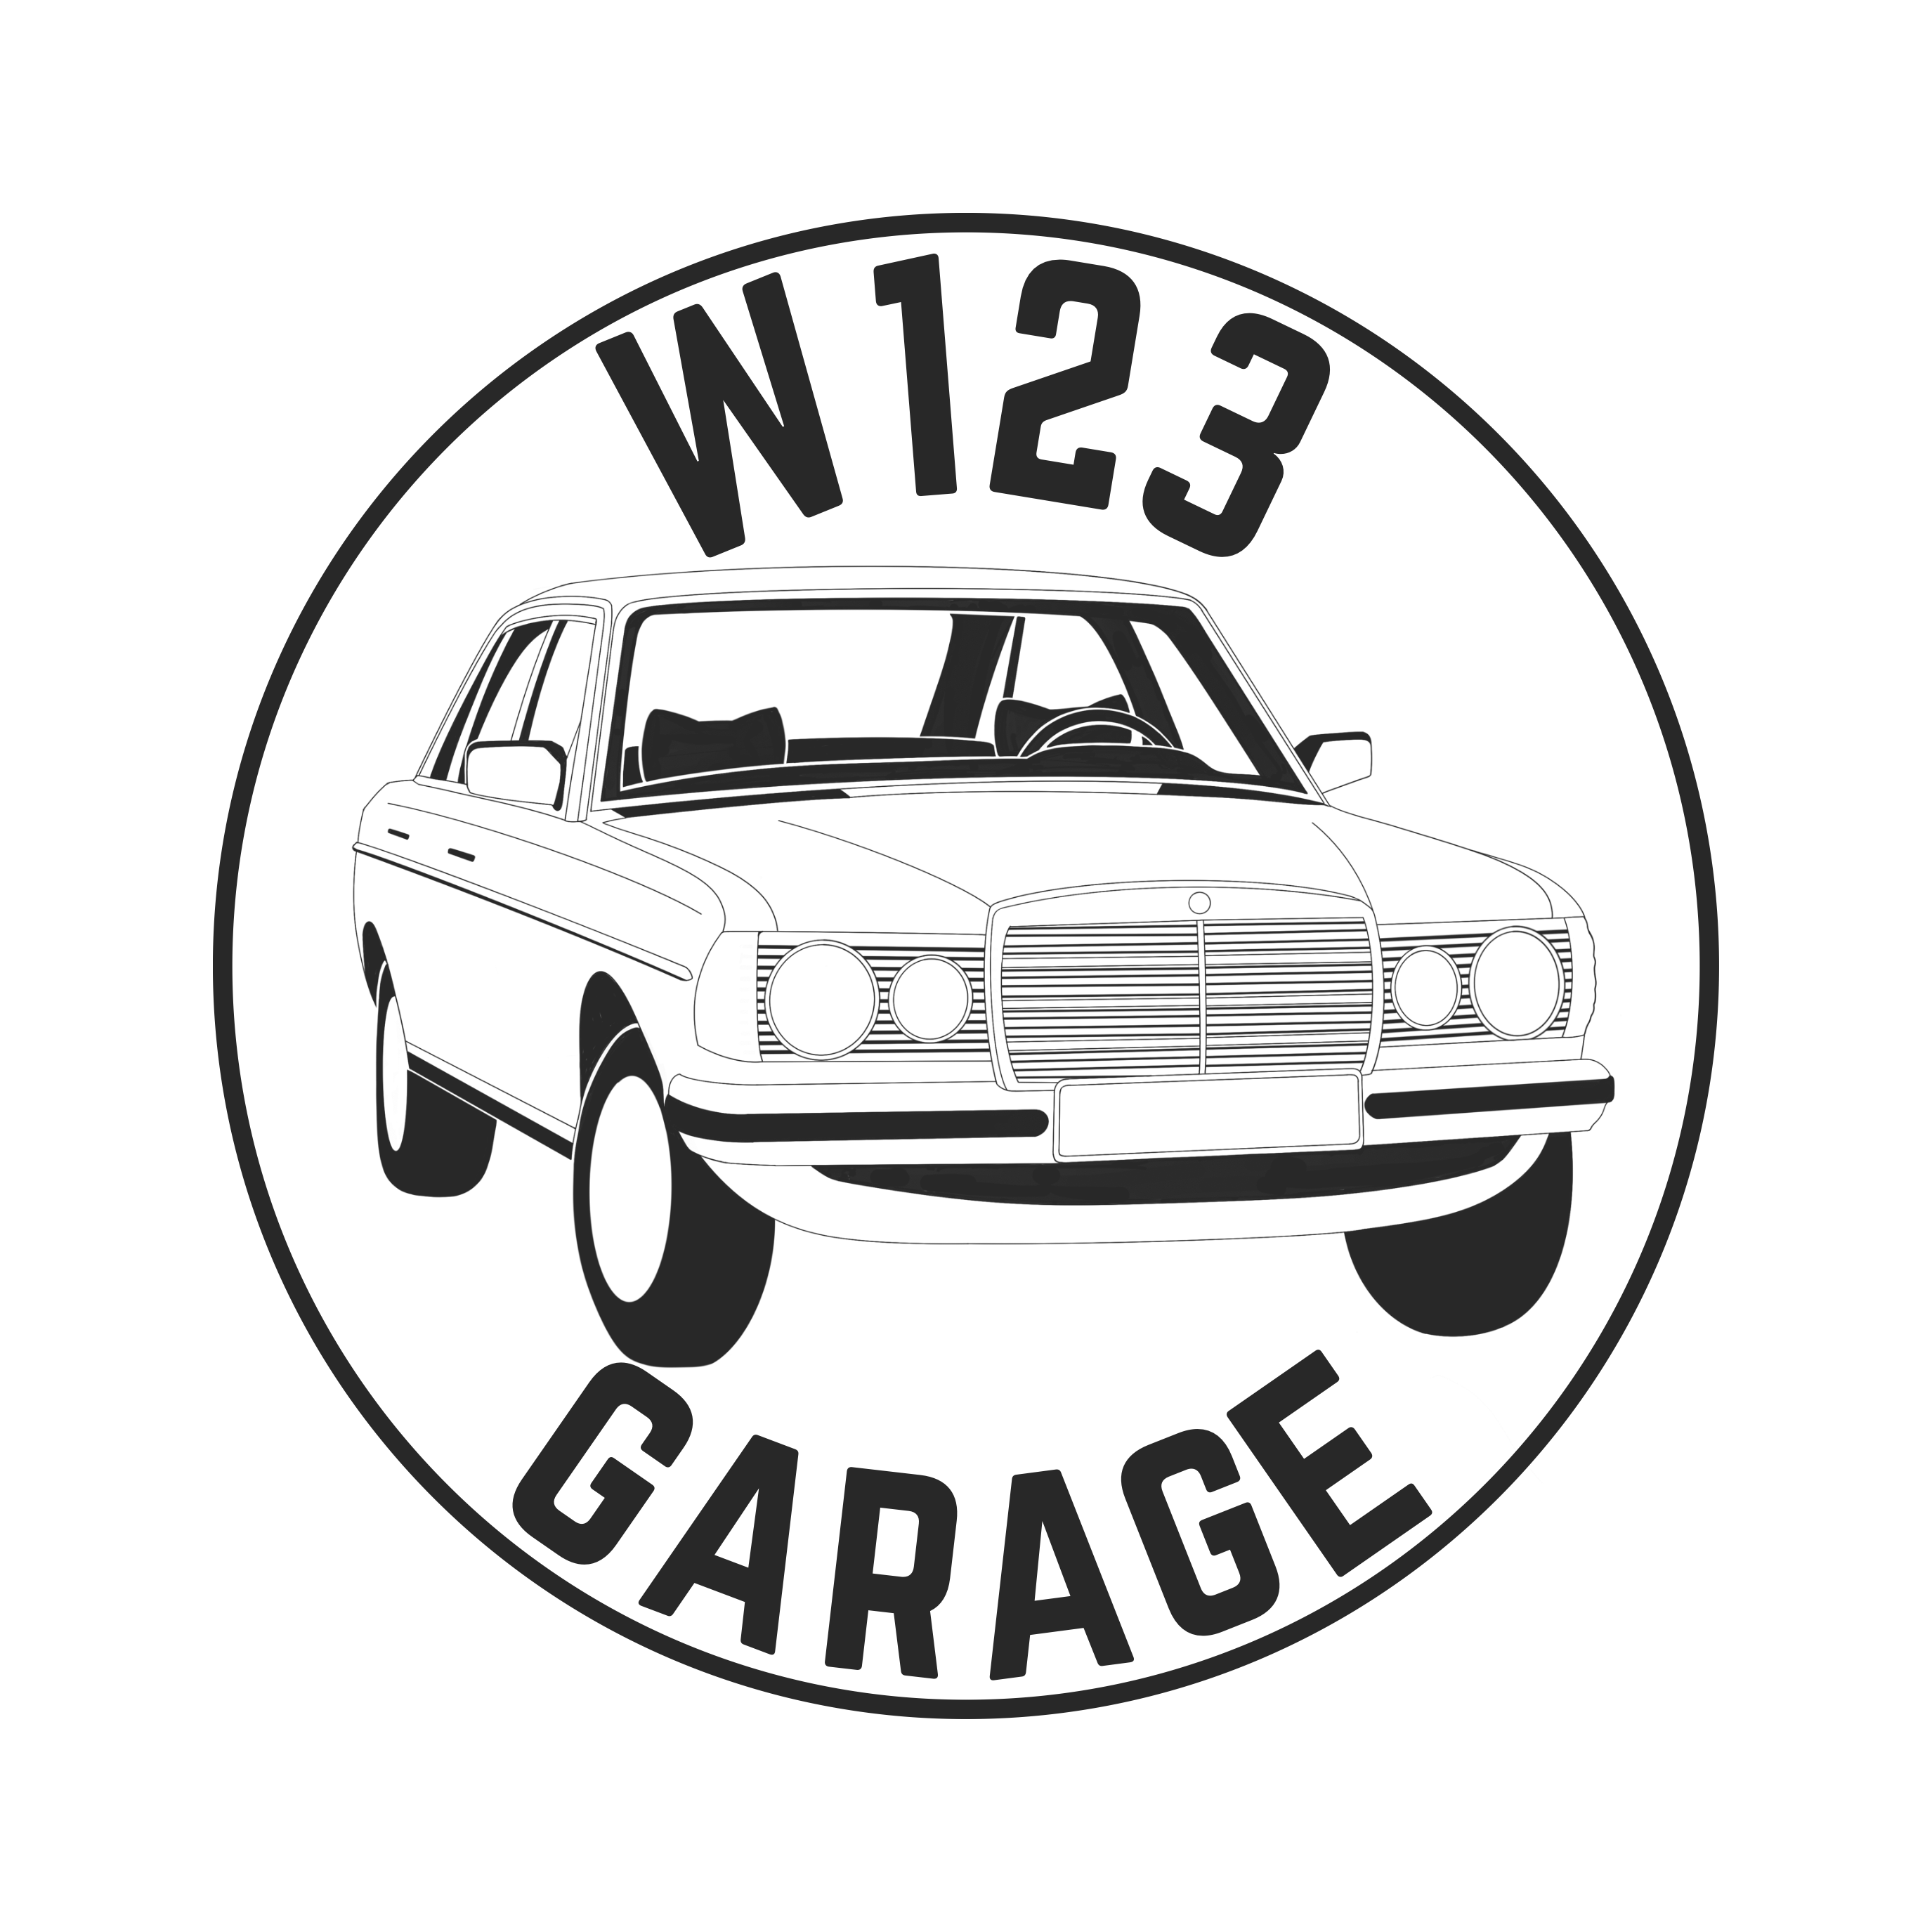 W123 Garage